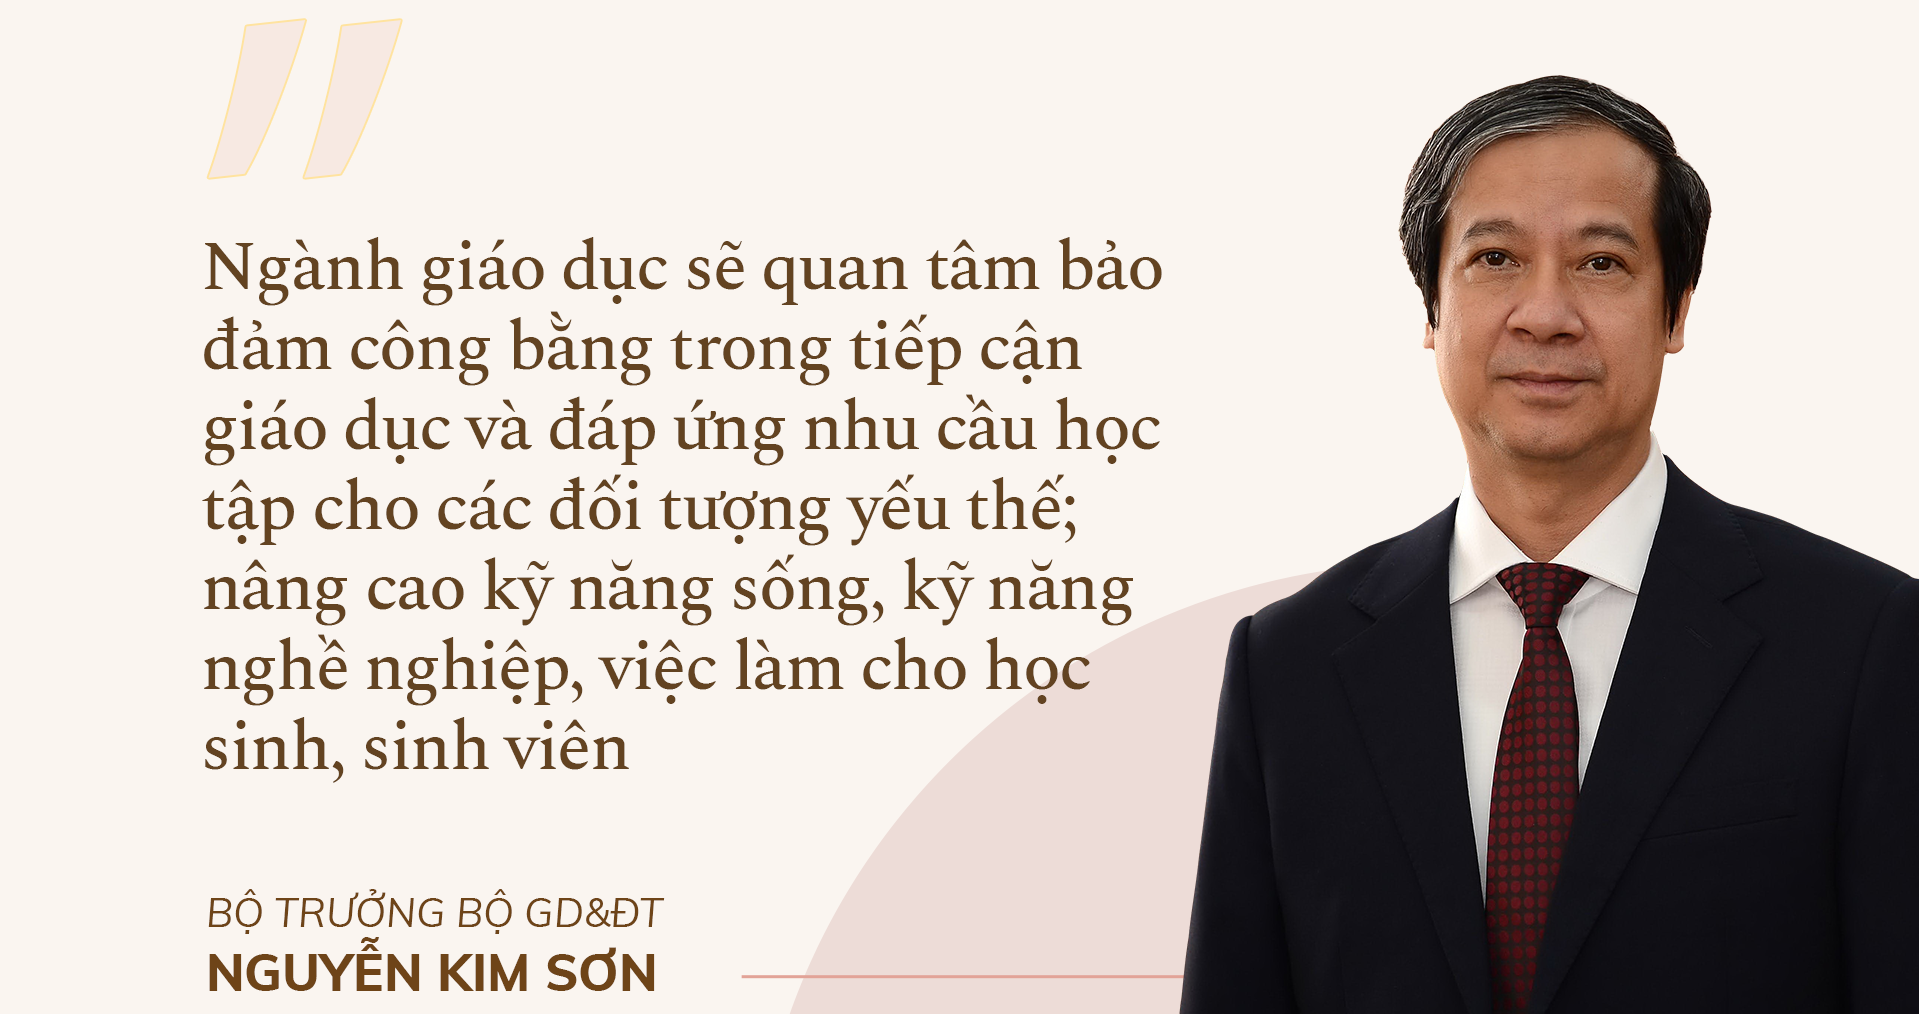 Bộ trưởng Bộ GD&ĐT Nguyễn Kim Sơn: Bù đắp kiến thức, tái thiết giáo dục - ảnh 10